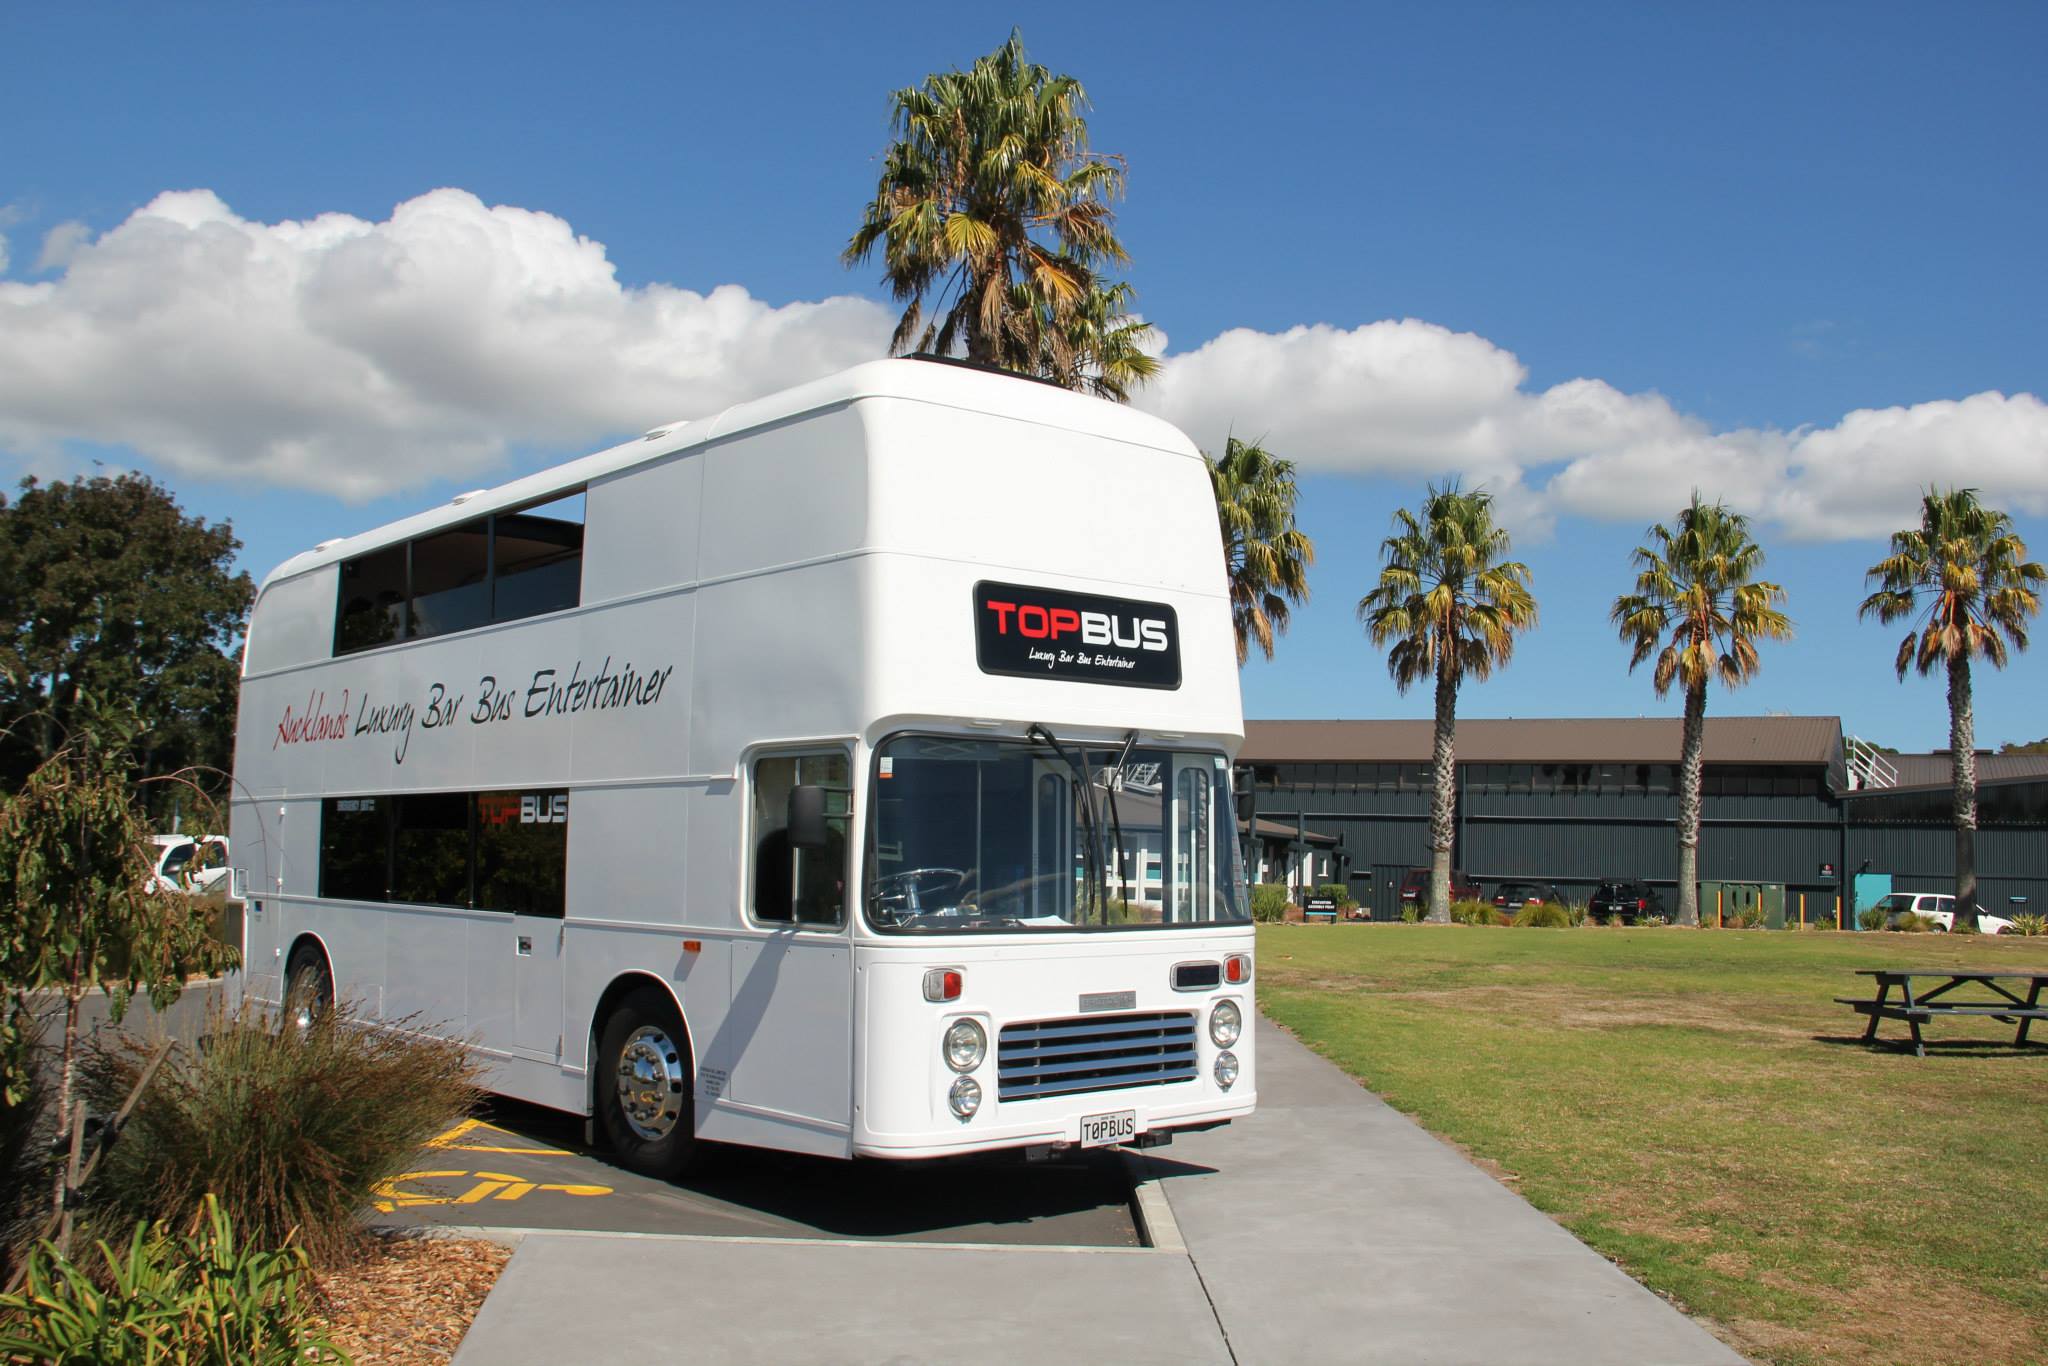 Topbus Party Bus tours